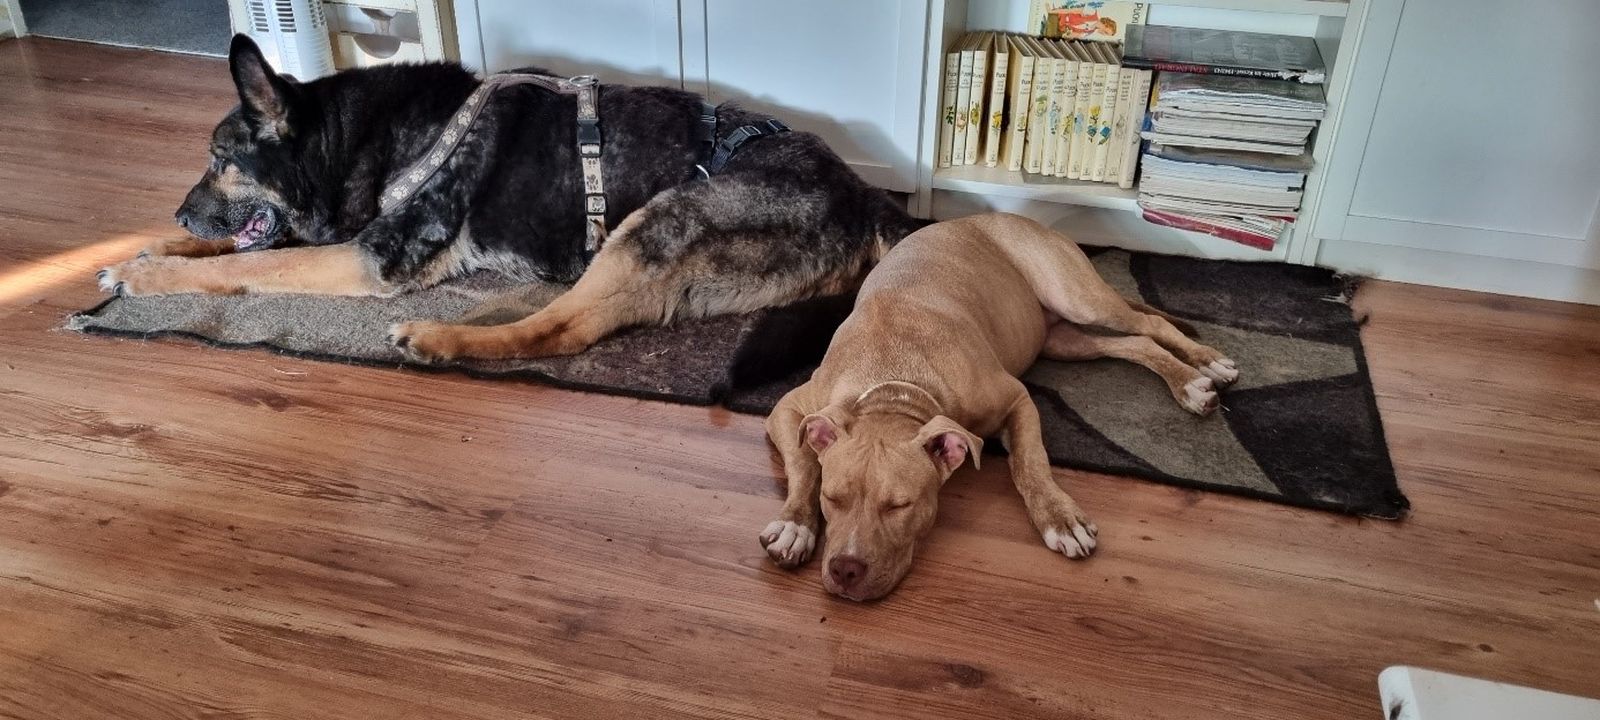 Ein alter Schaeferhund liegt schlafend auf der Hundedecke neben einem schlafenden Staffordshire Terrier